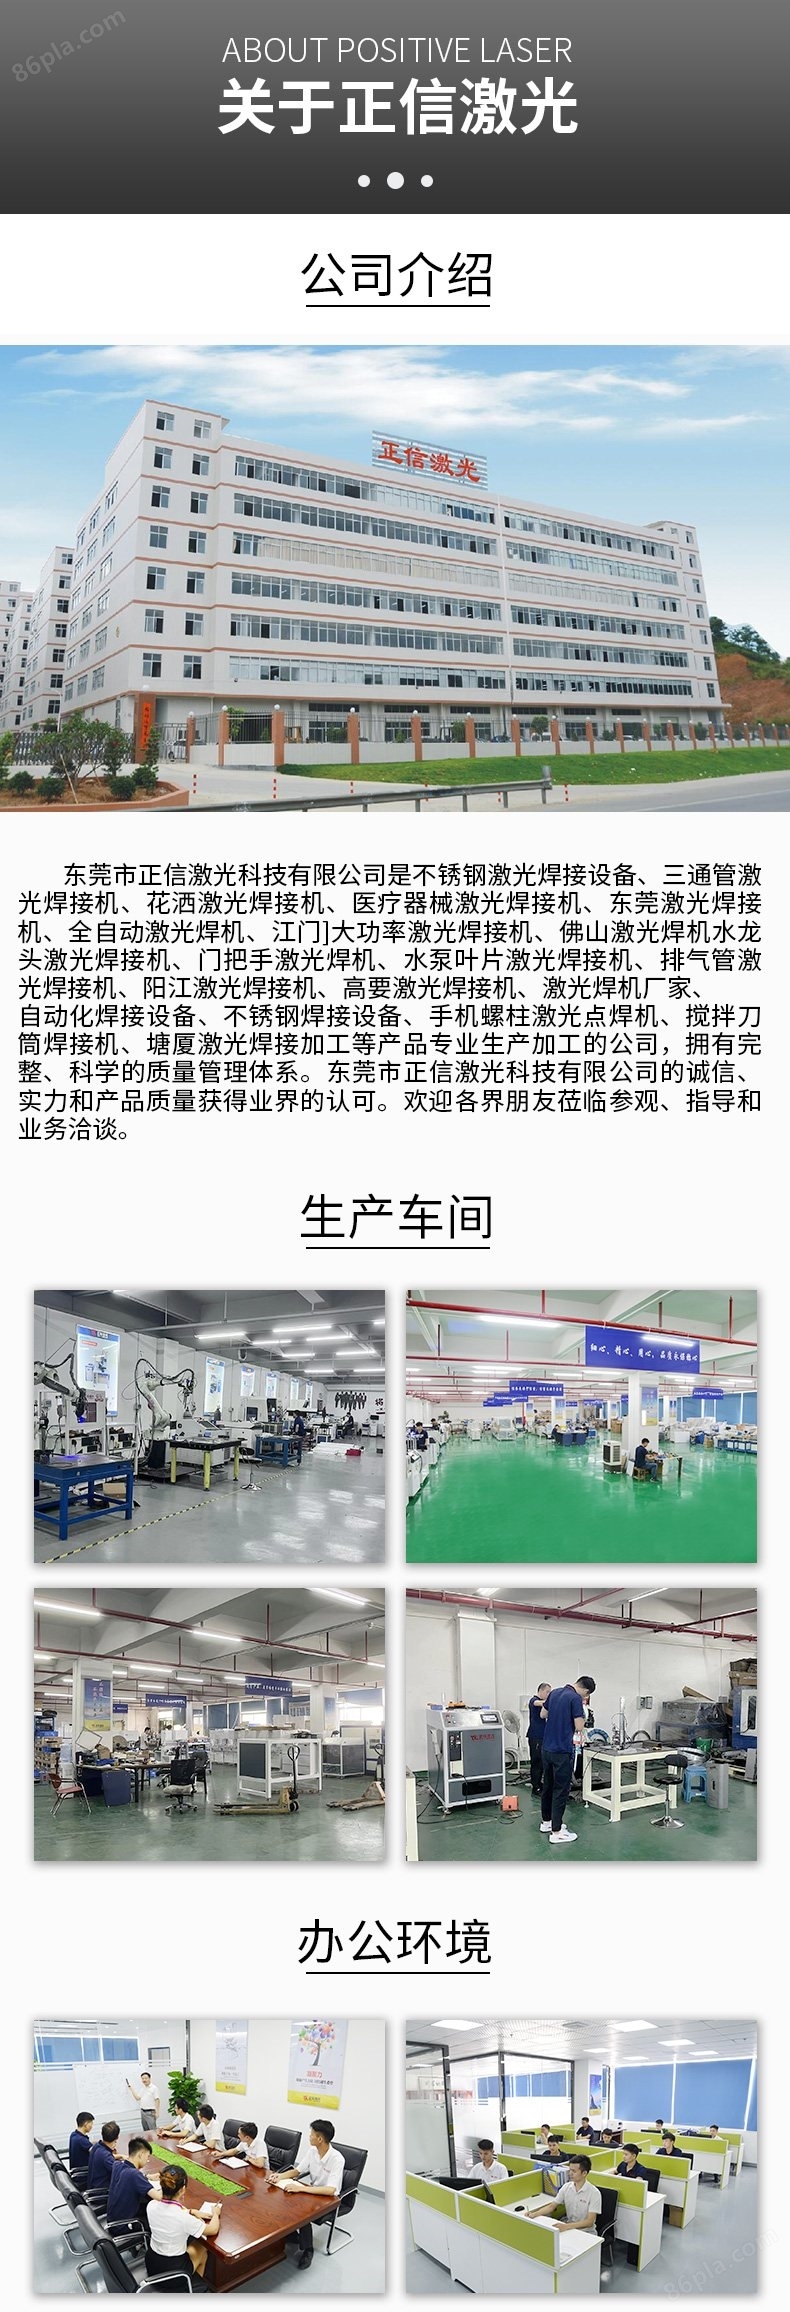 东莞市正信300w自动四轴激光焊接机